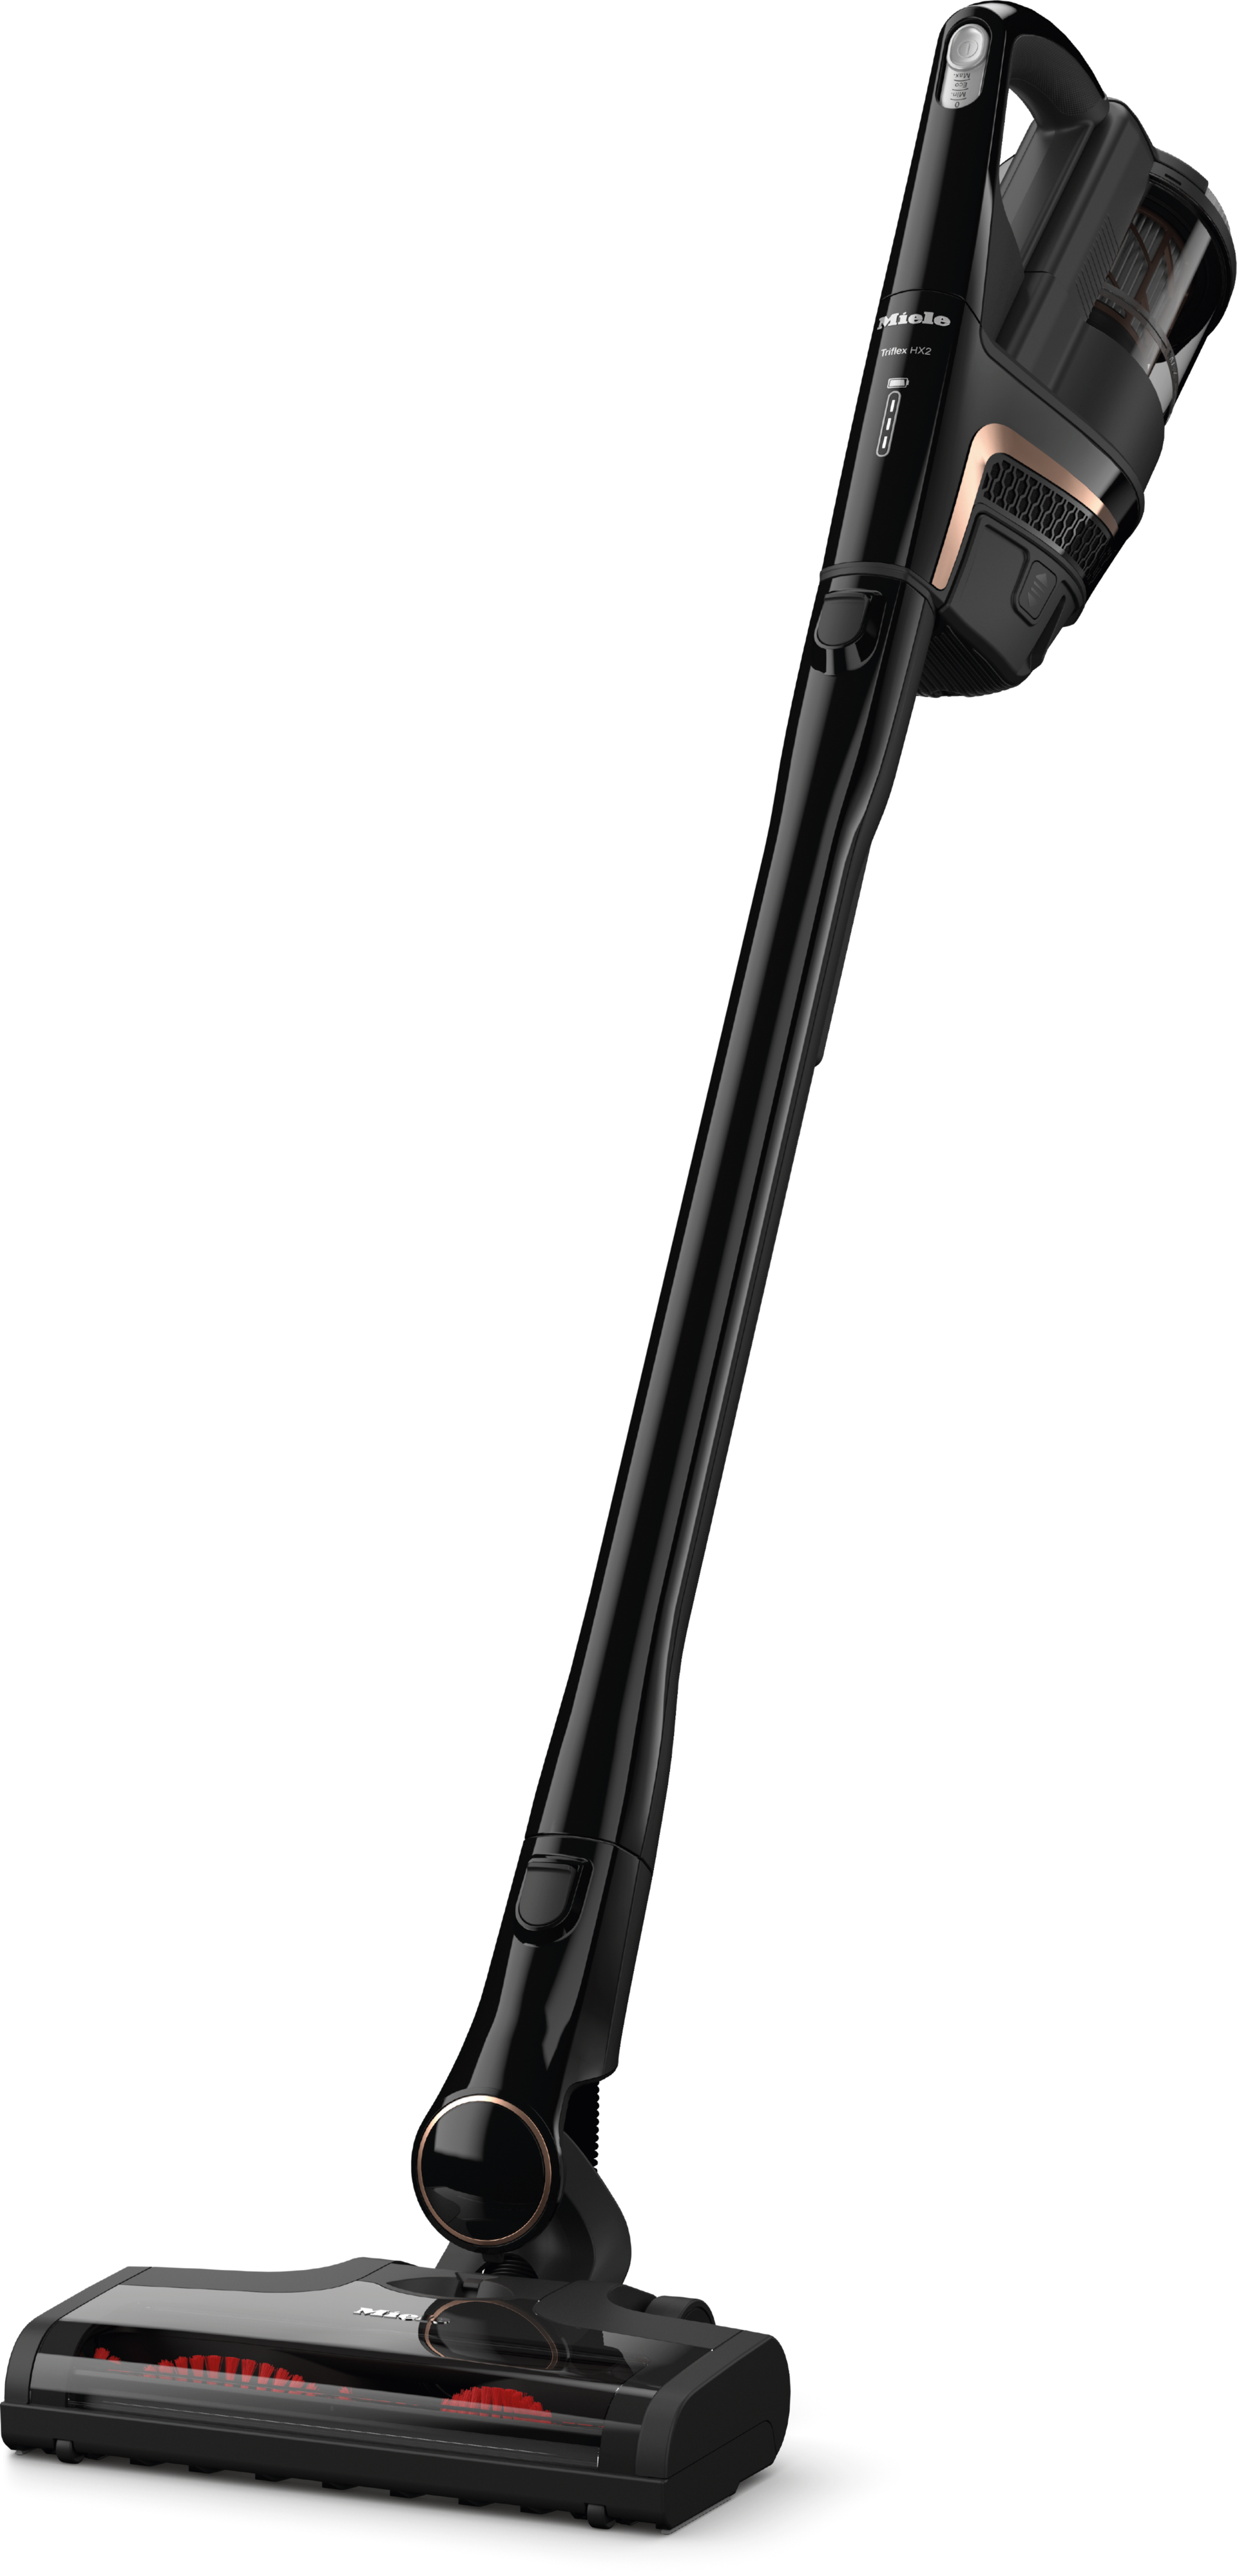 Ηλεκτρικές σκούπες - Triflex HX2 125 Gala Edition Μαύρο obsidian - 4